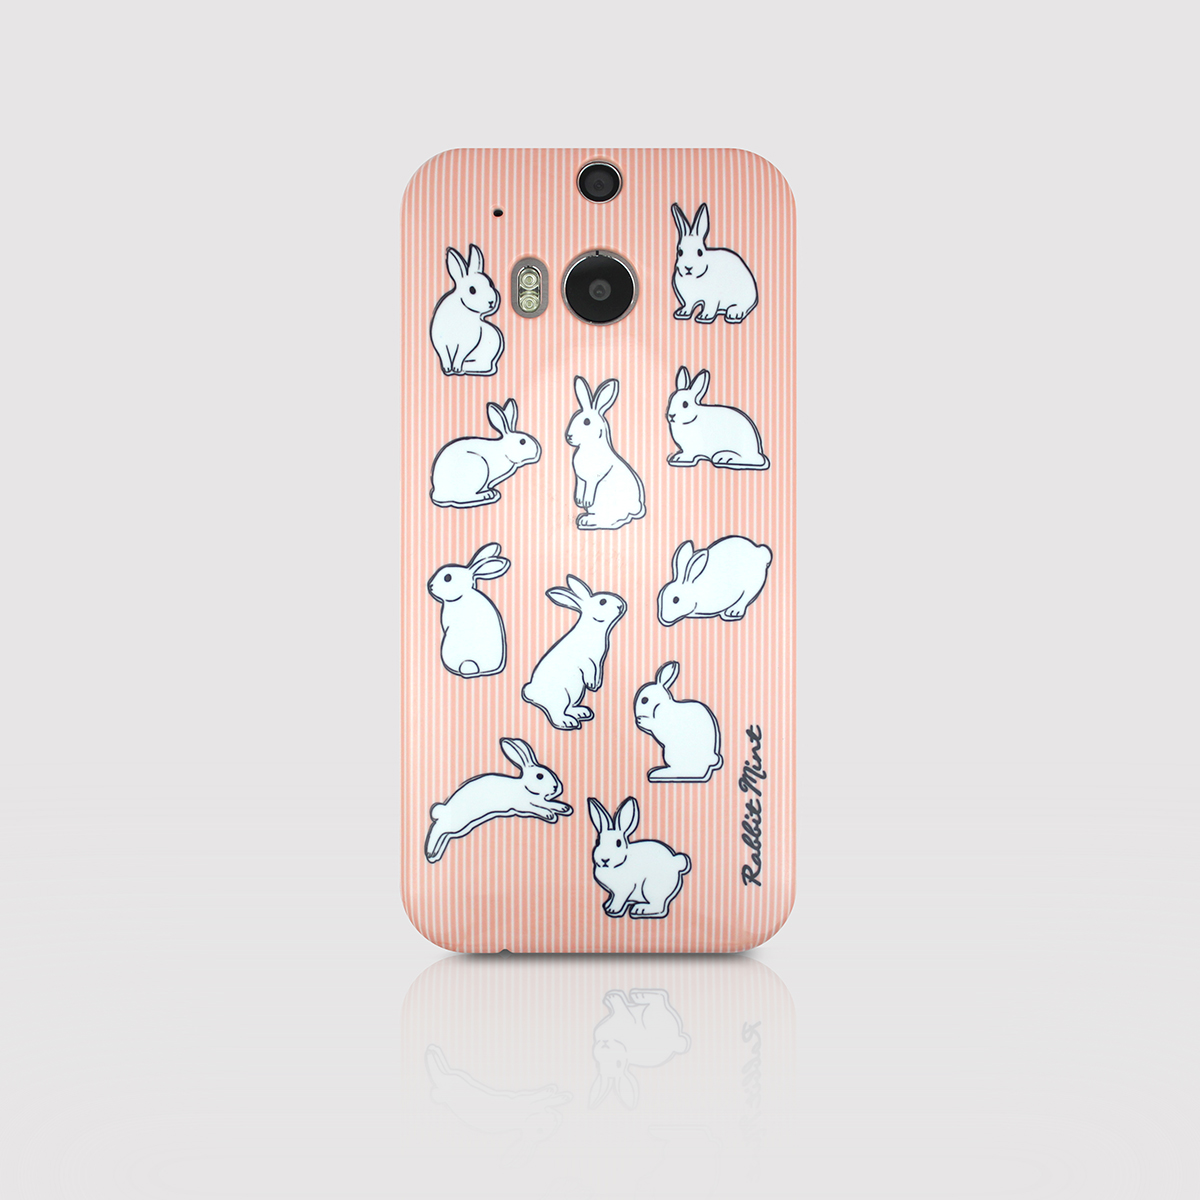 Htc One M8 Case - Rabbit & Pink (p00050)